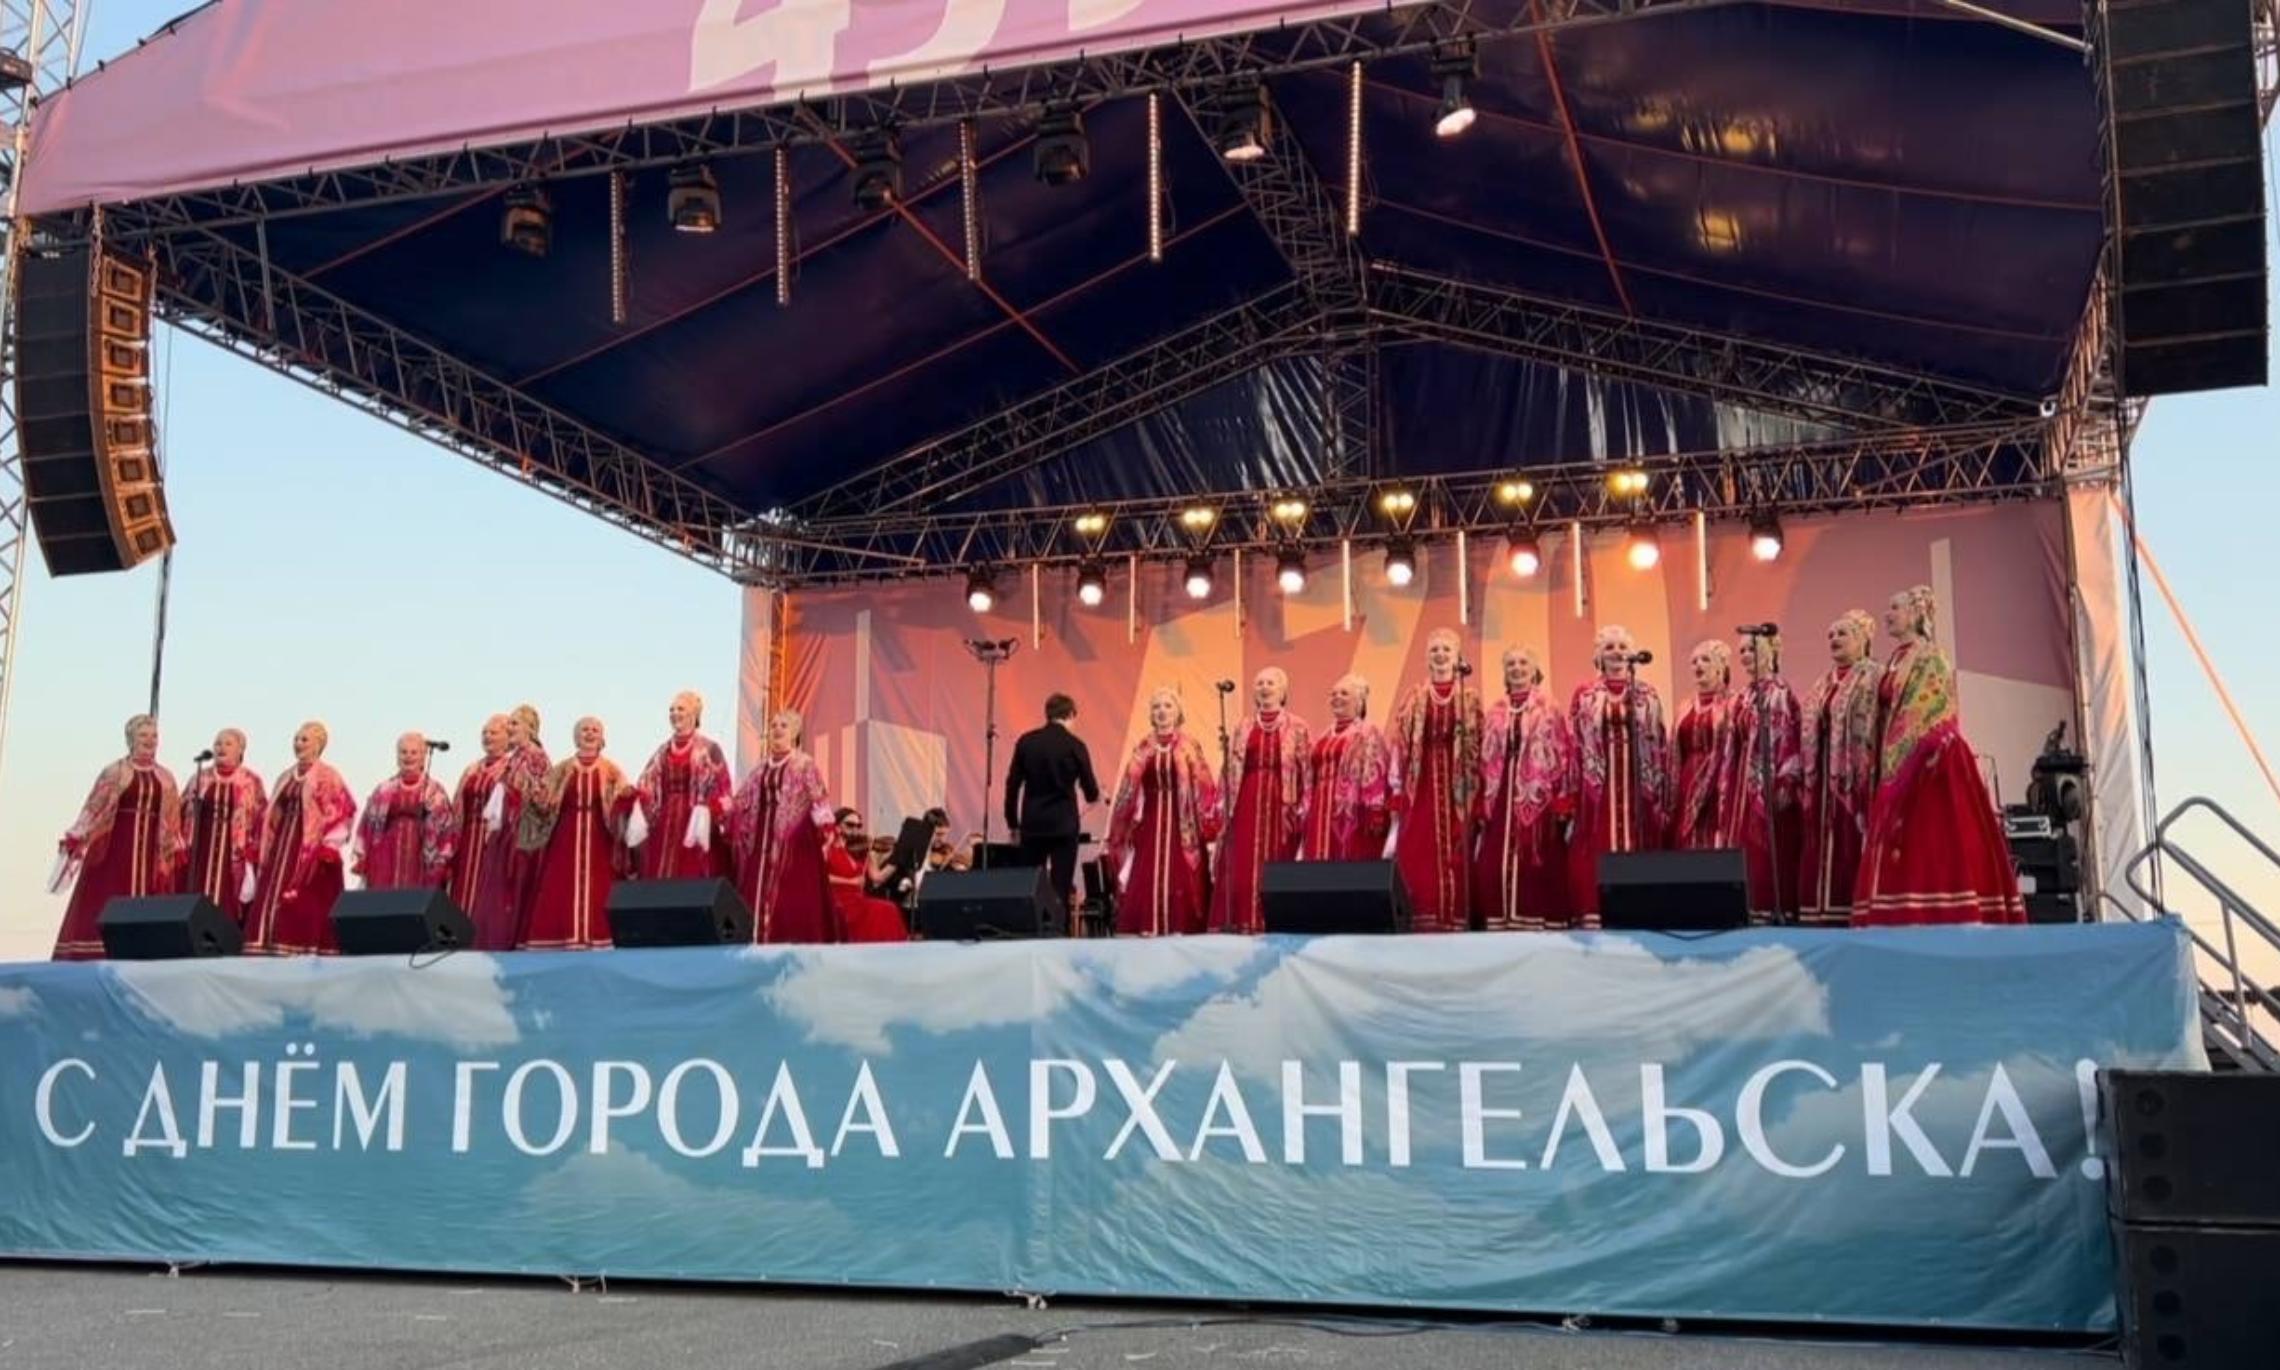 В День города хор исполнил гимн Архангельска.